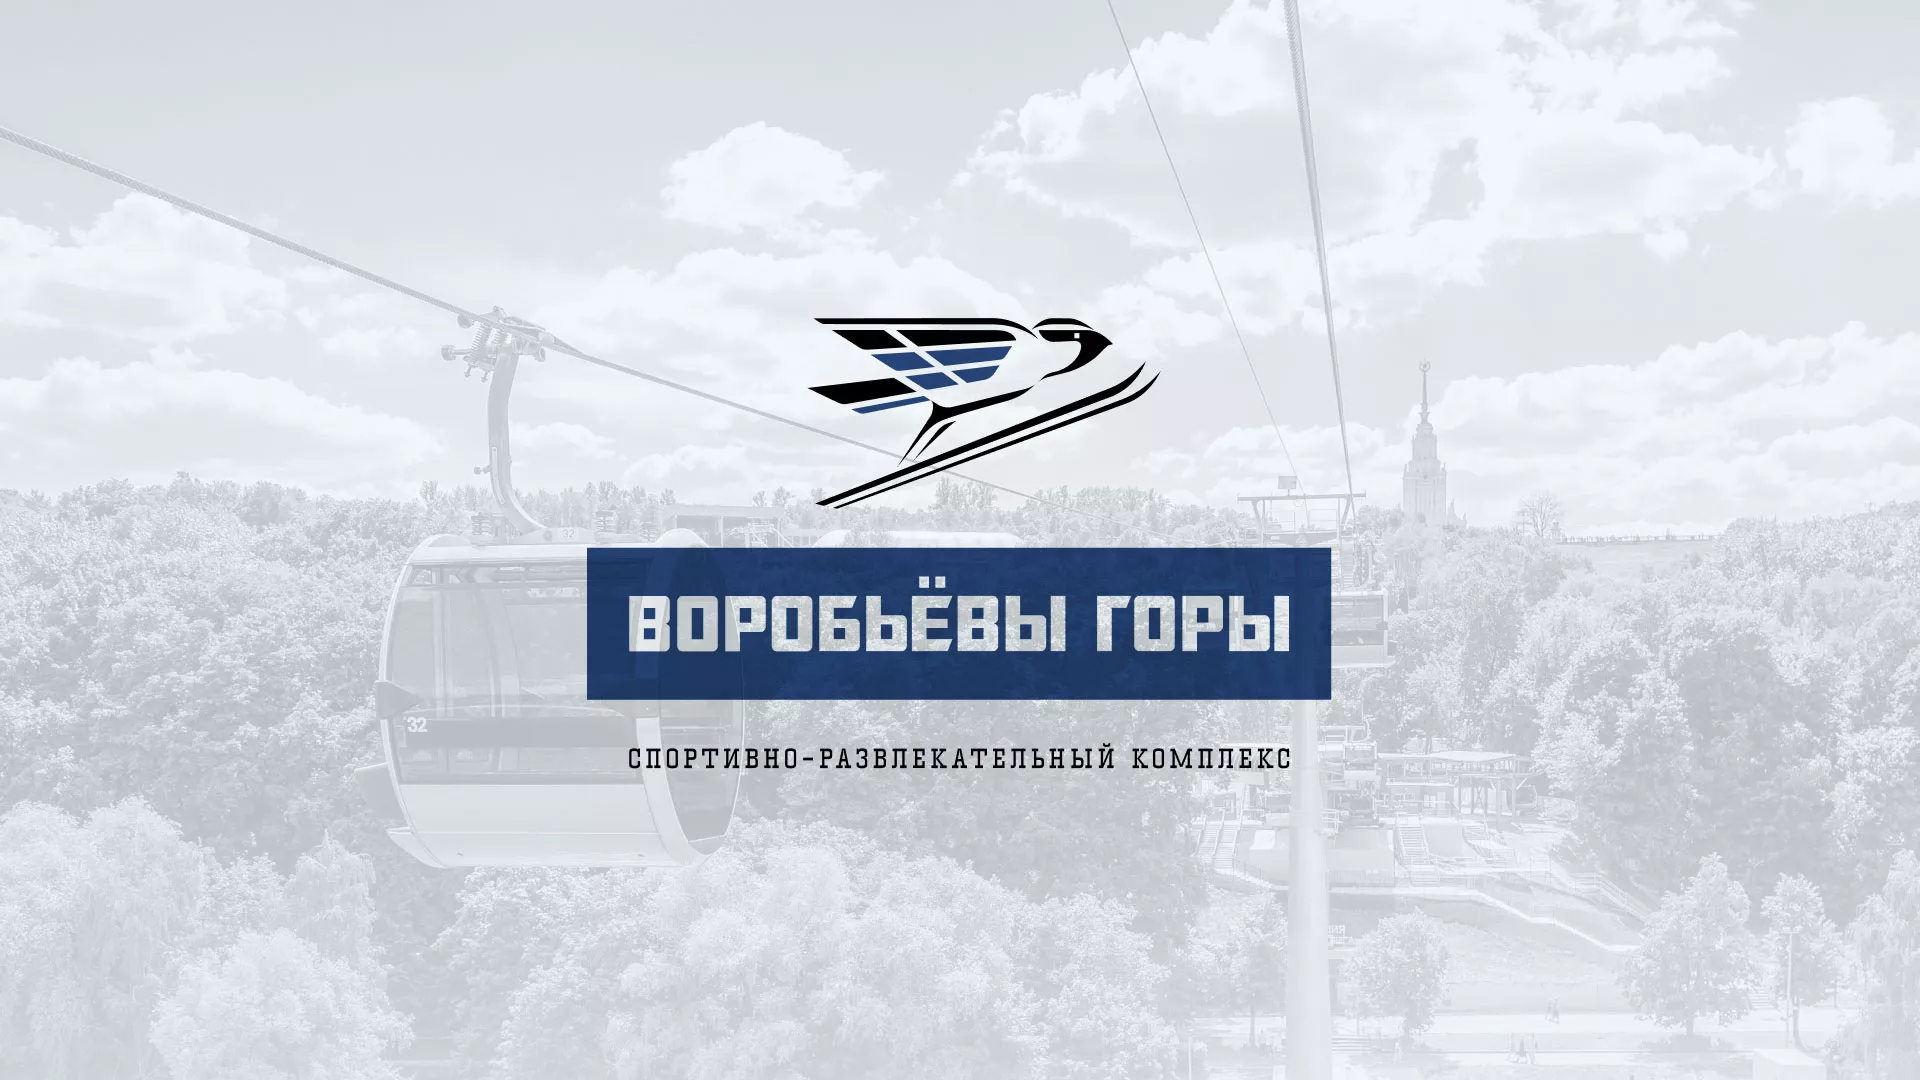 Разработка сайта в Дмитрове для спортивно-развлекательного комплекса «Воробьёвы горы»